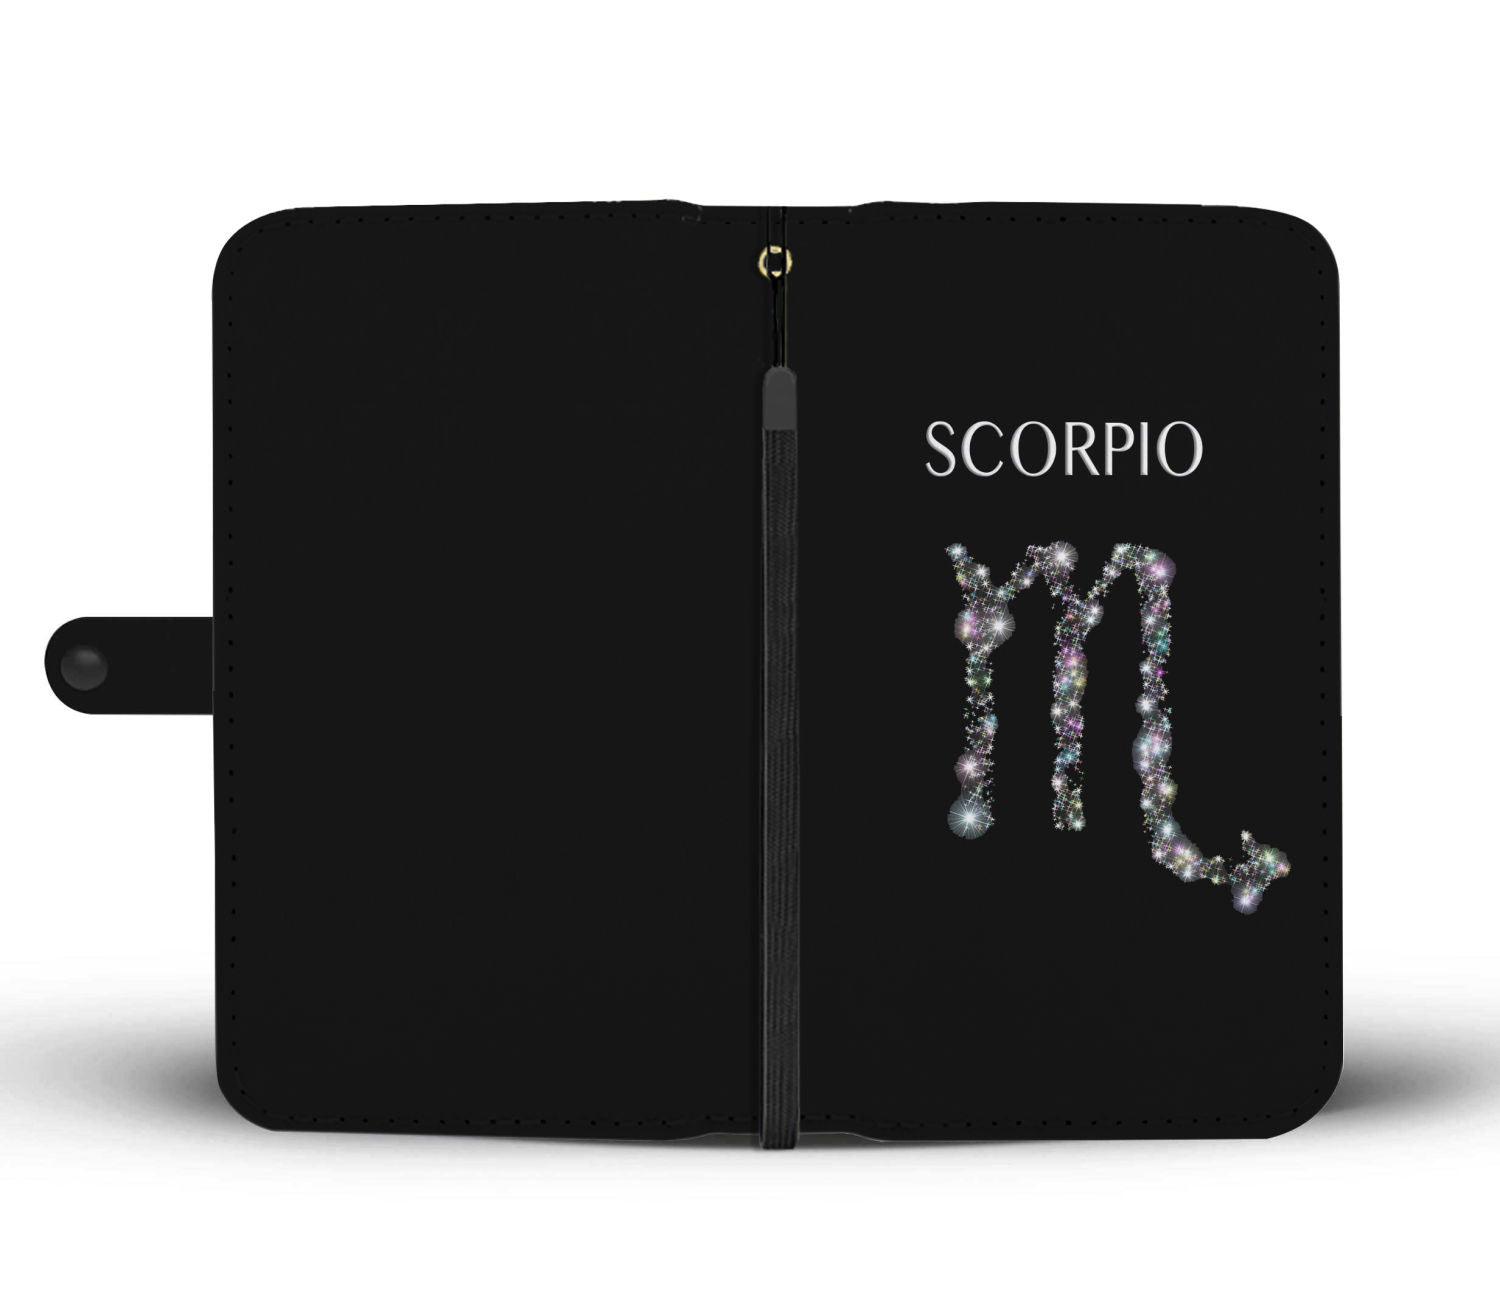 Scorpio Stars Phone Wallet